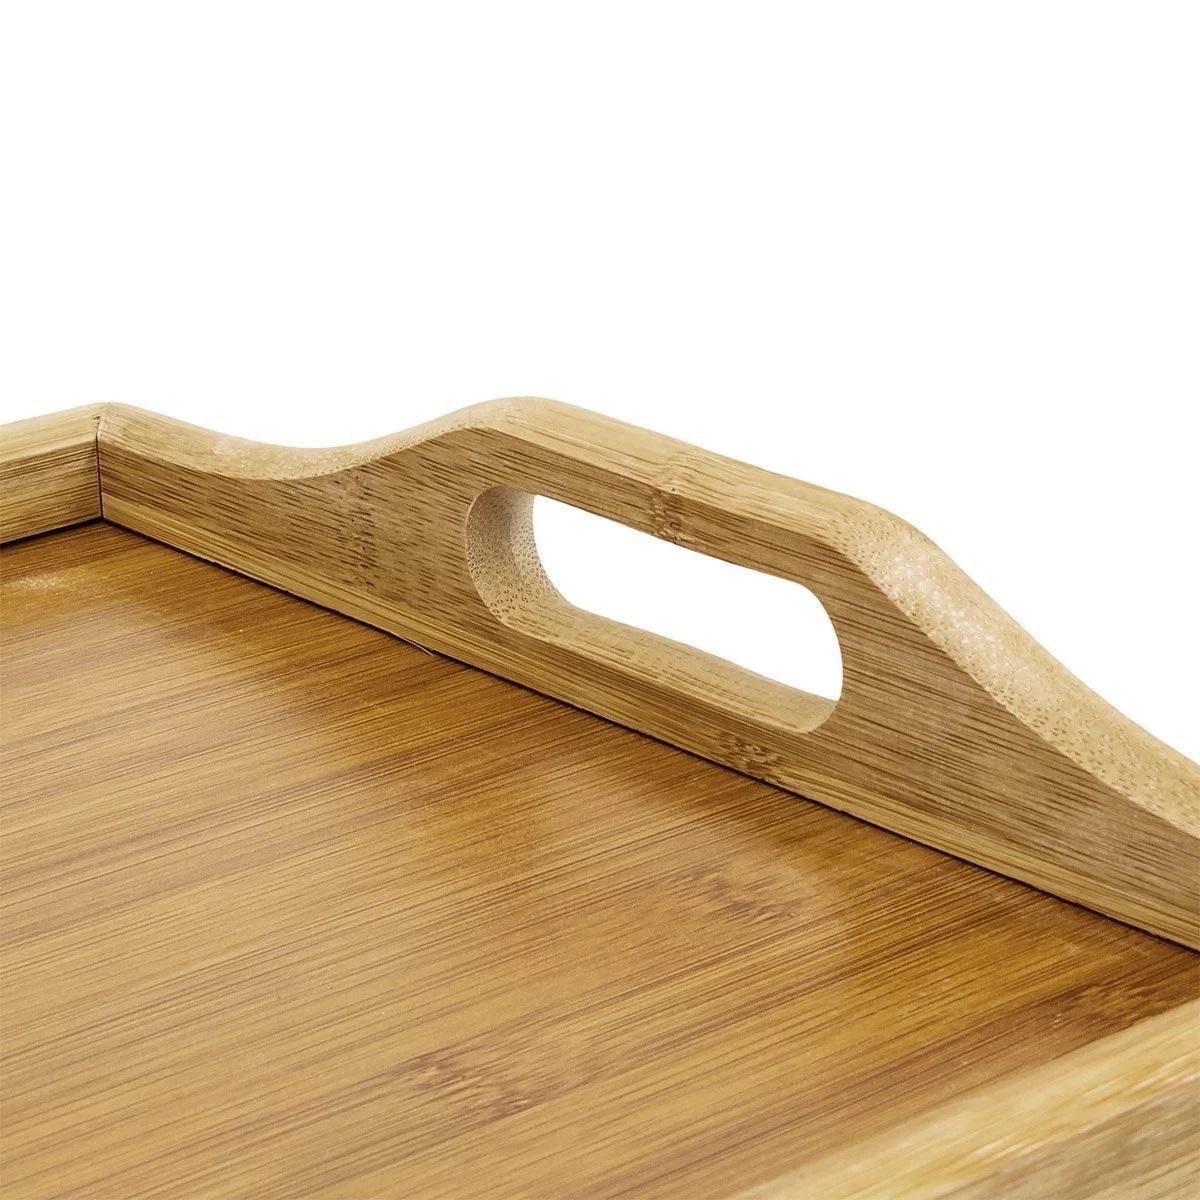 Фото 2 Бамбуковый столик для завтрака с ручками, накроватный поднос со складными ножками CG TB01